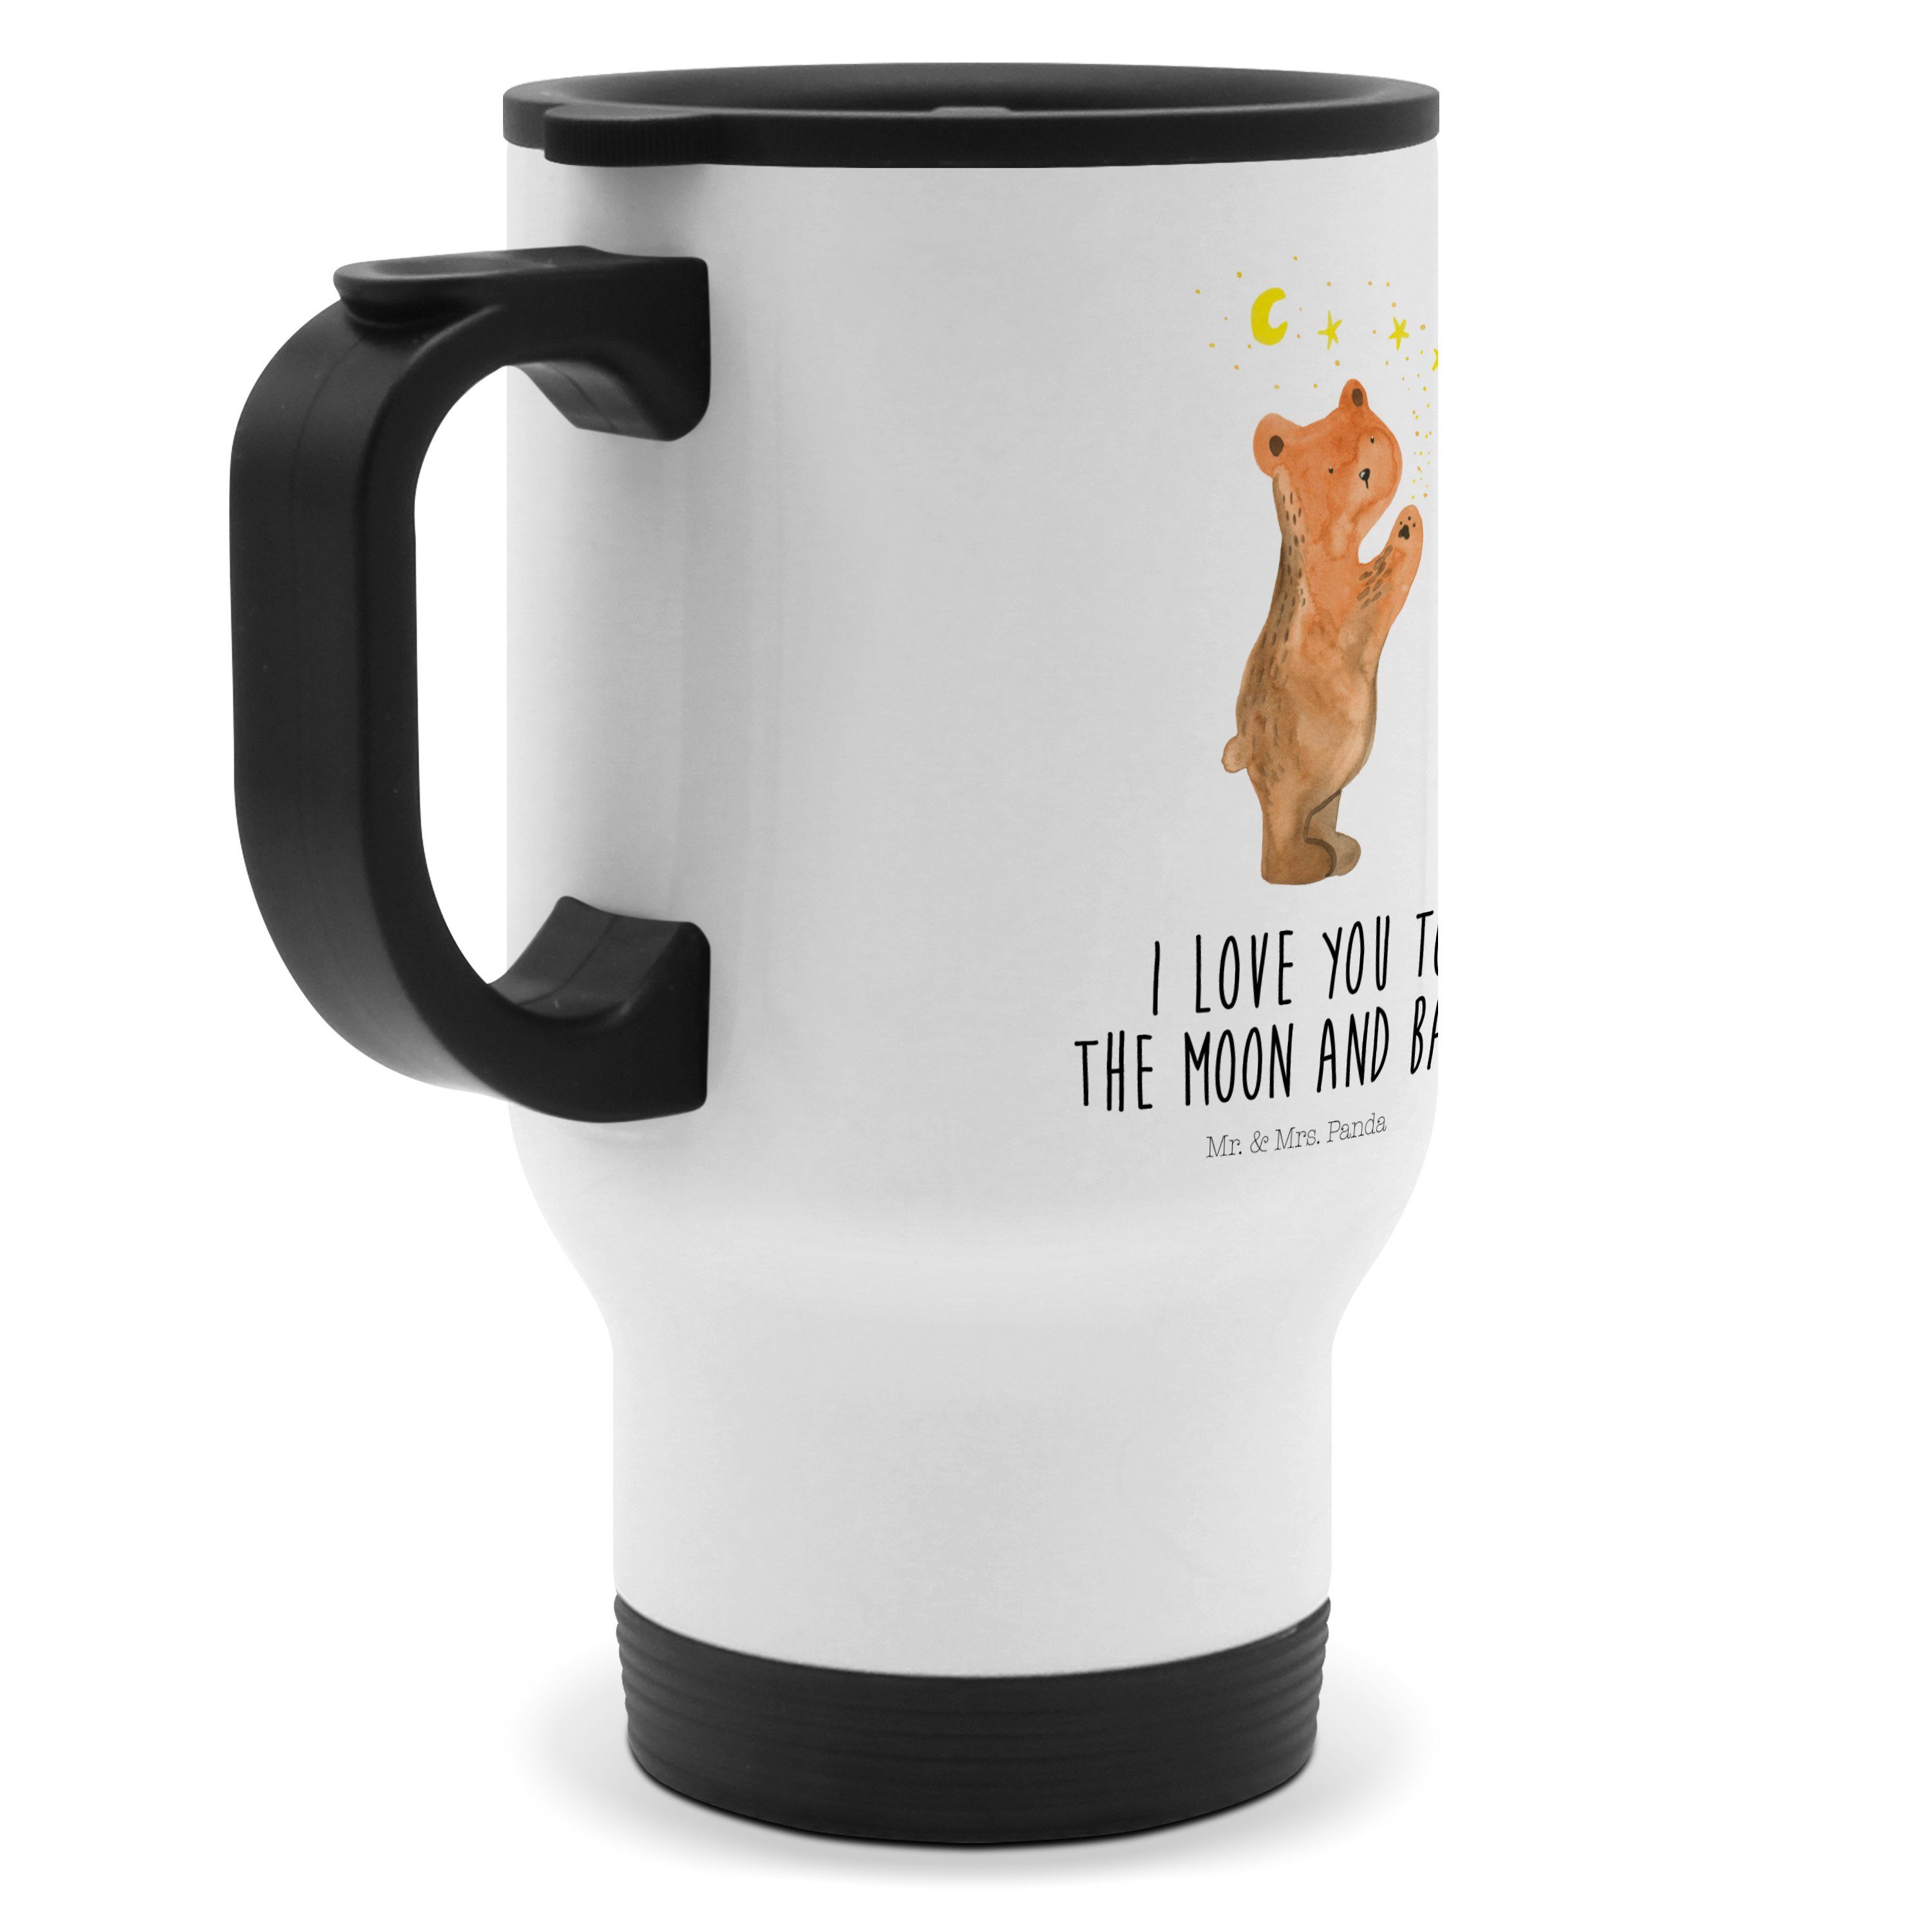 Mr. & Mrs. Panda Thermobecher Kaffeetasse - Weiß Mitnehmen, Geschenk, Bär - zum Thermobe, Verliebter Edelstahl